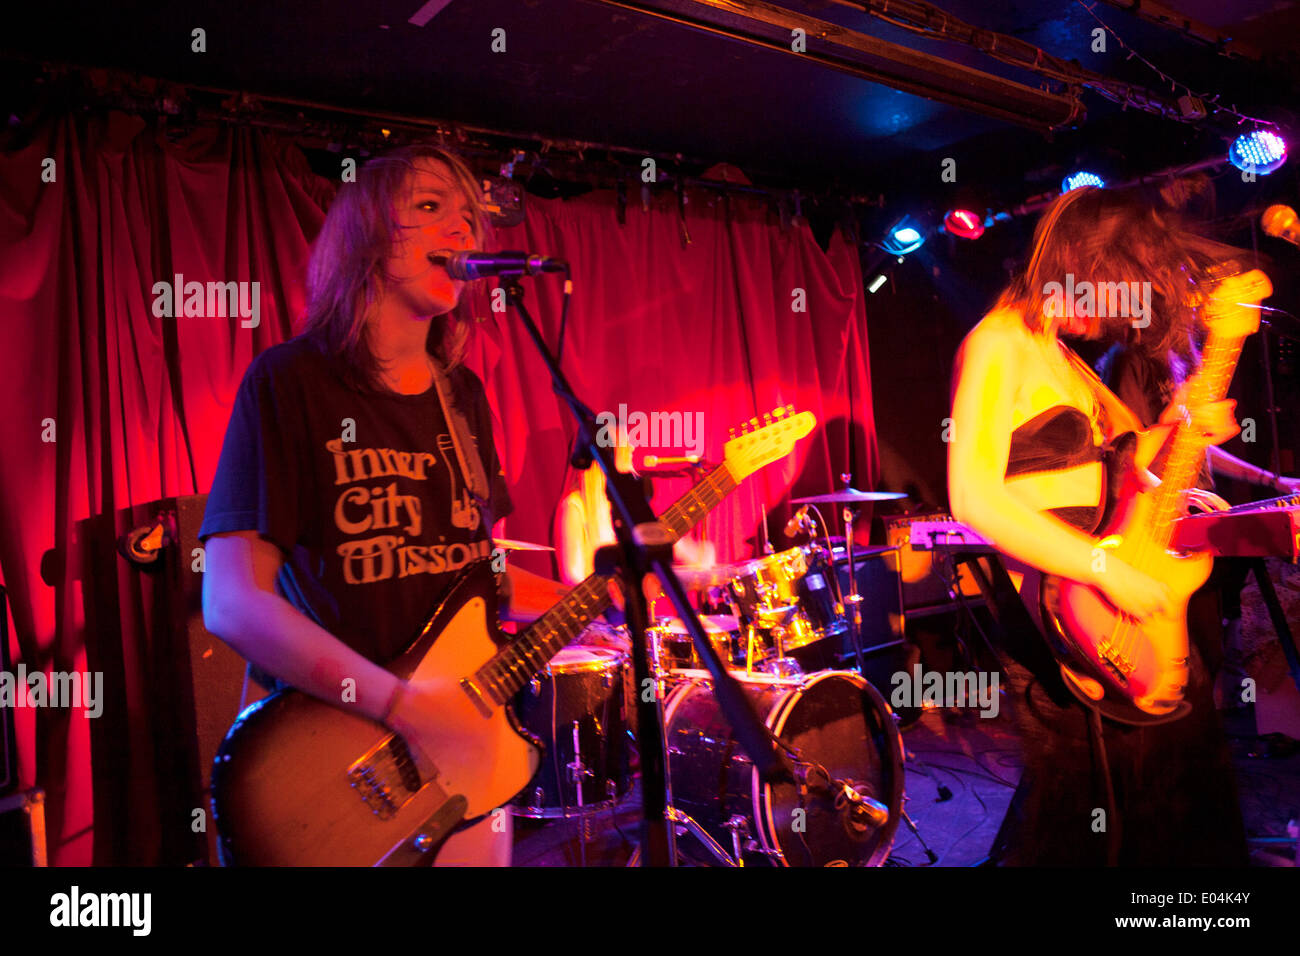 Londra, Regno Unito. Giovedì 1 maggio 2014. Tutti ragazza Canadian indie rock band le spiagge giocare un concerto presso l'acqua ratti a Londra. Credito: Michael Kemp/Alamy Live News Foto Stock